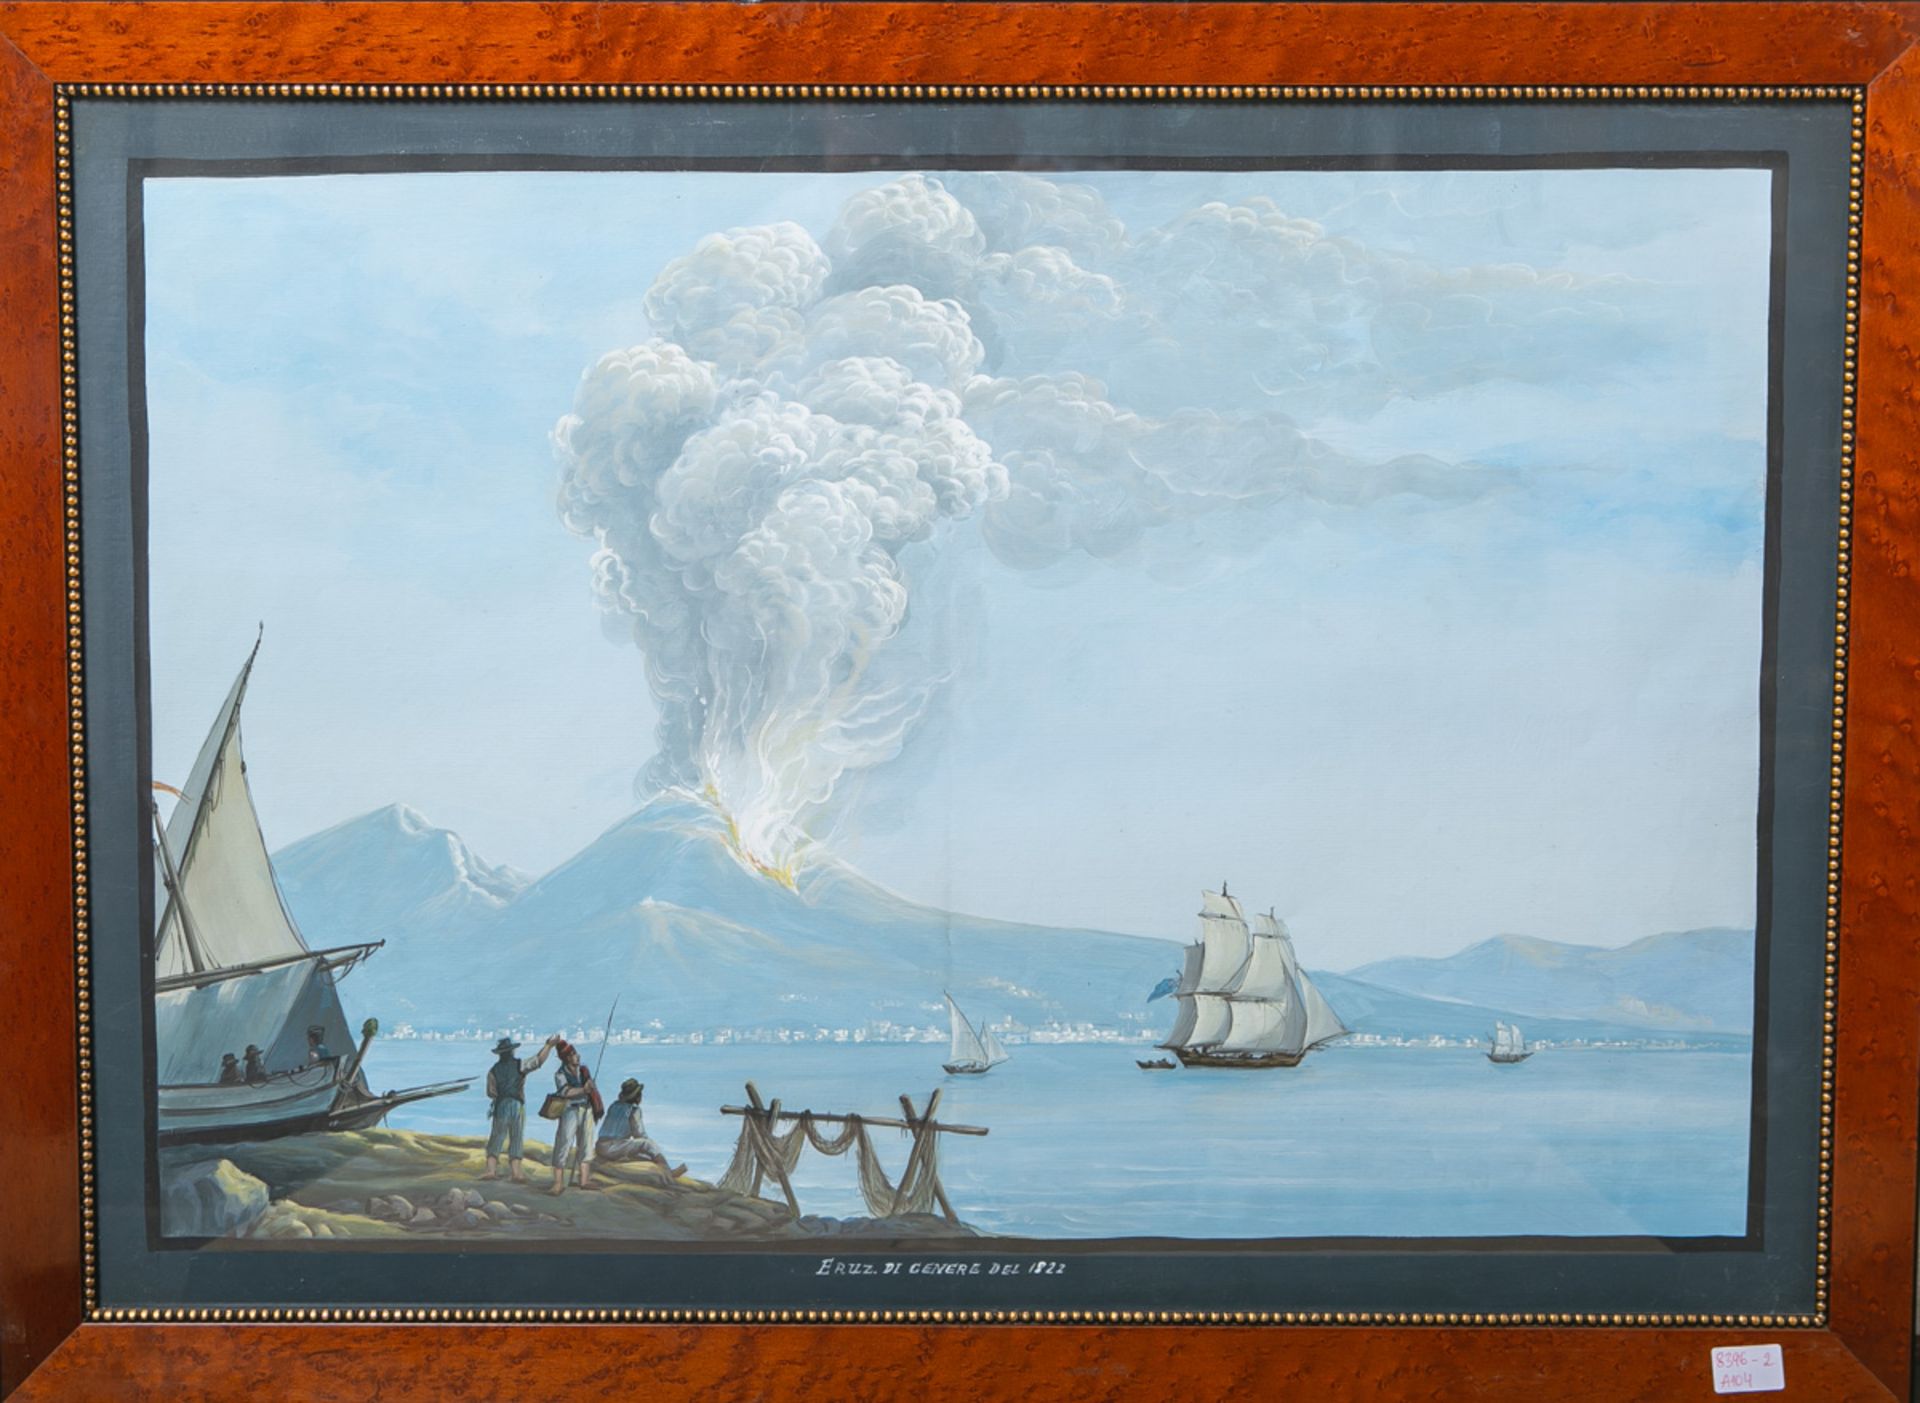 wohl La Pira, Gioacchino (act. 1839 - 1870), "Eruzione del 1810" - Bild 2 aus 2